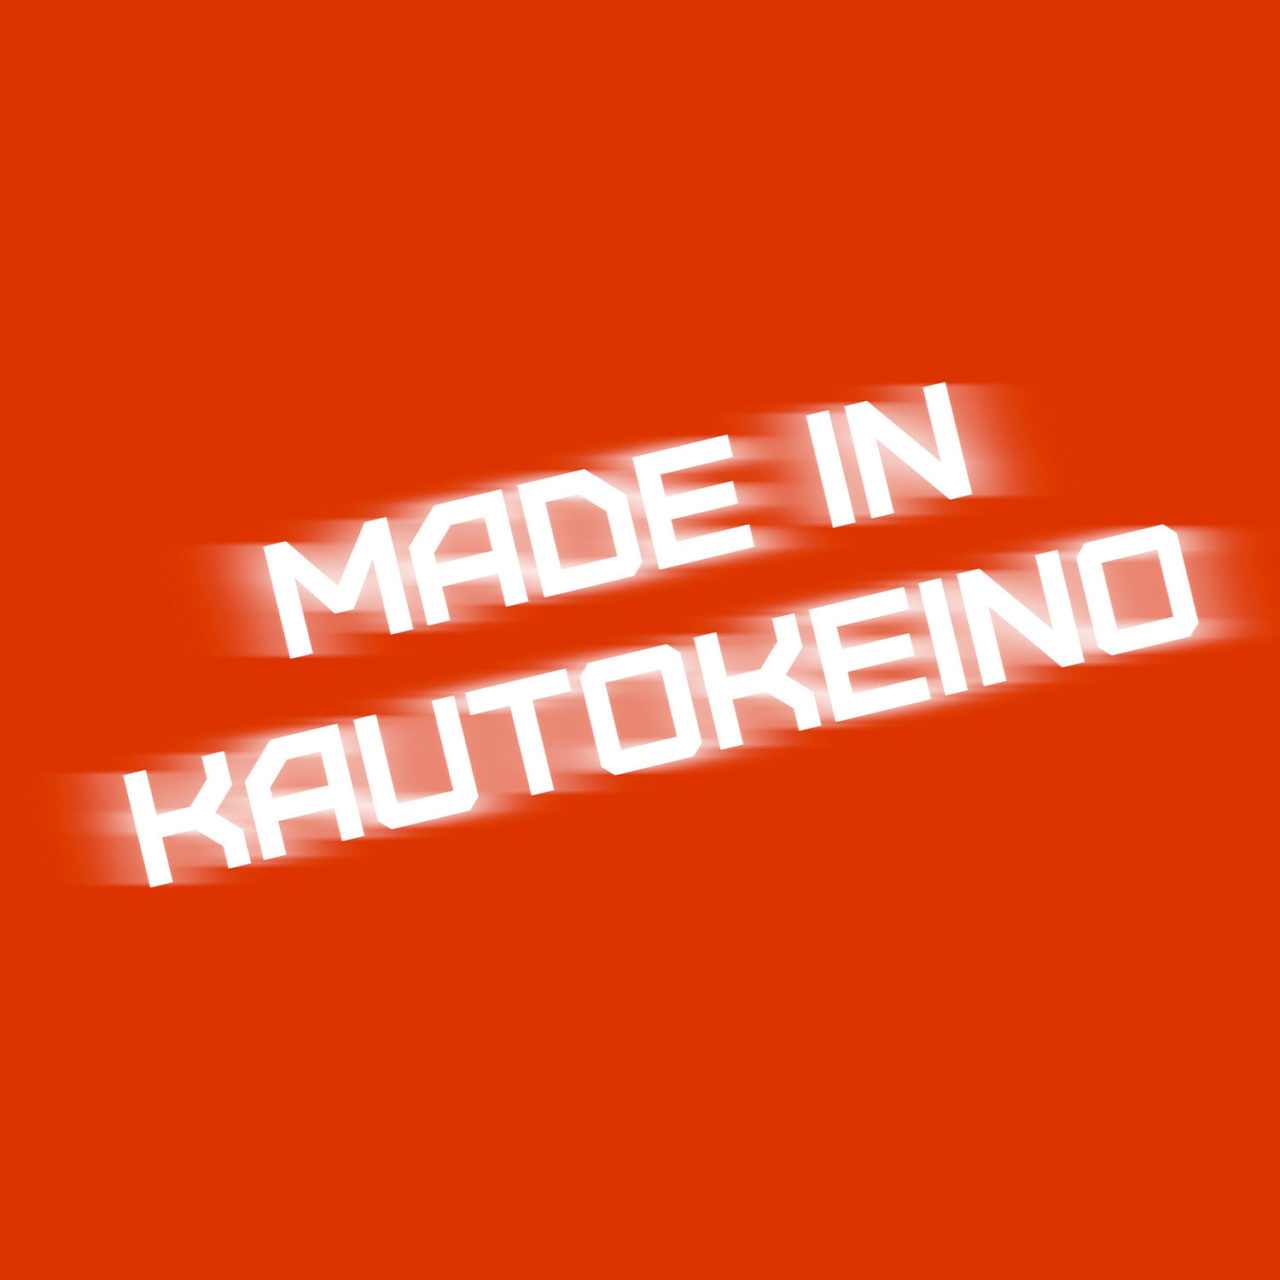 Made-In-Kautokeino-1280x1280.jpg